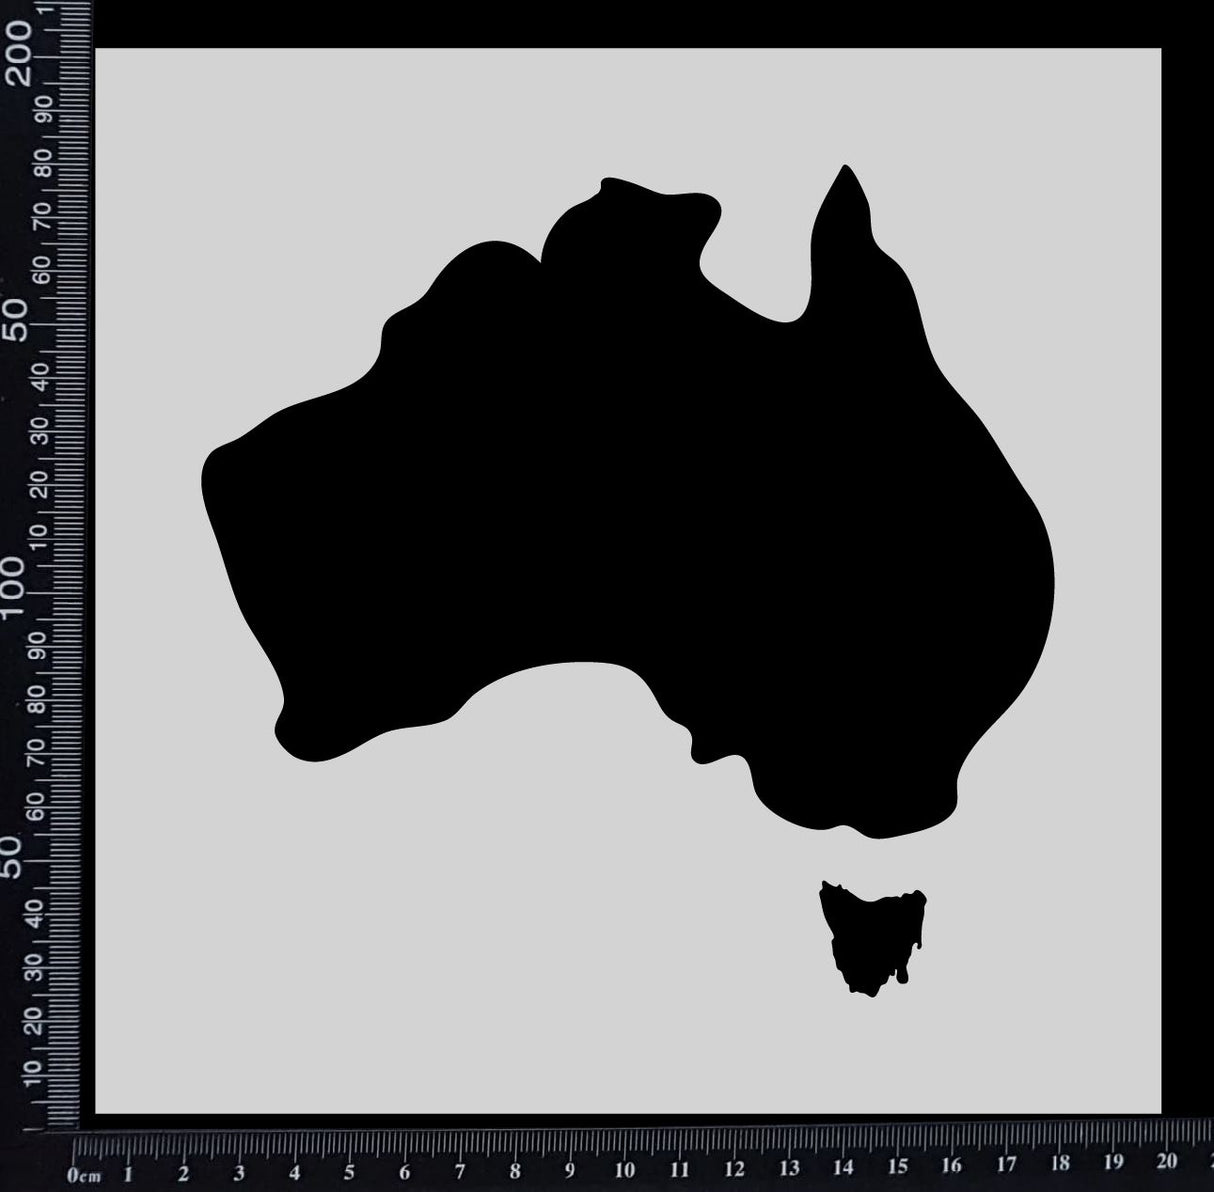 Australia Shape - Stencil - 200mm x 200mm